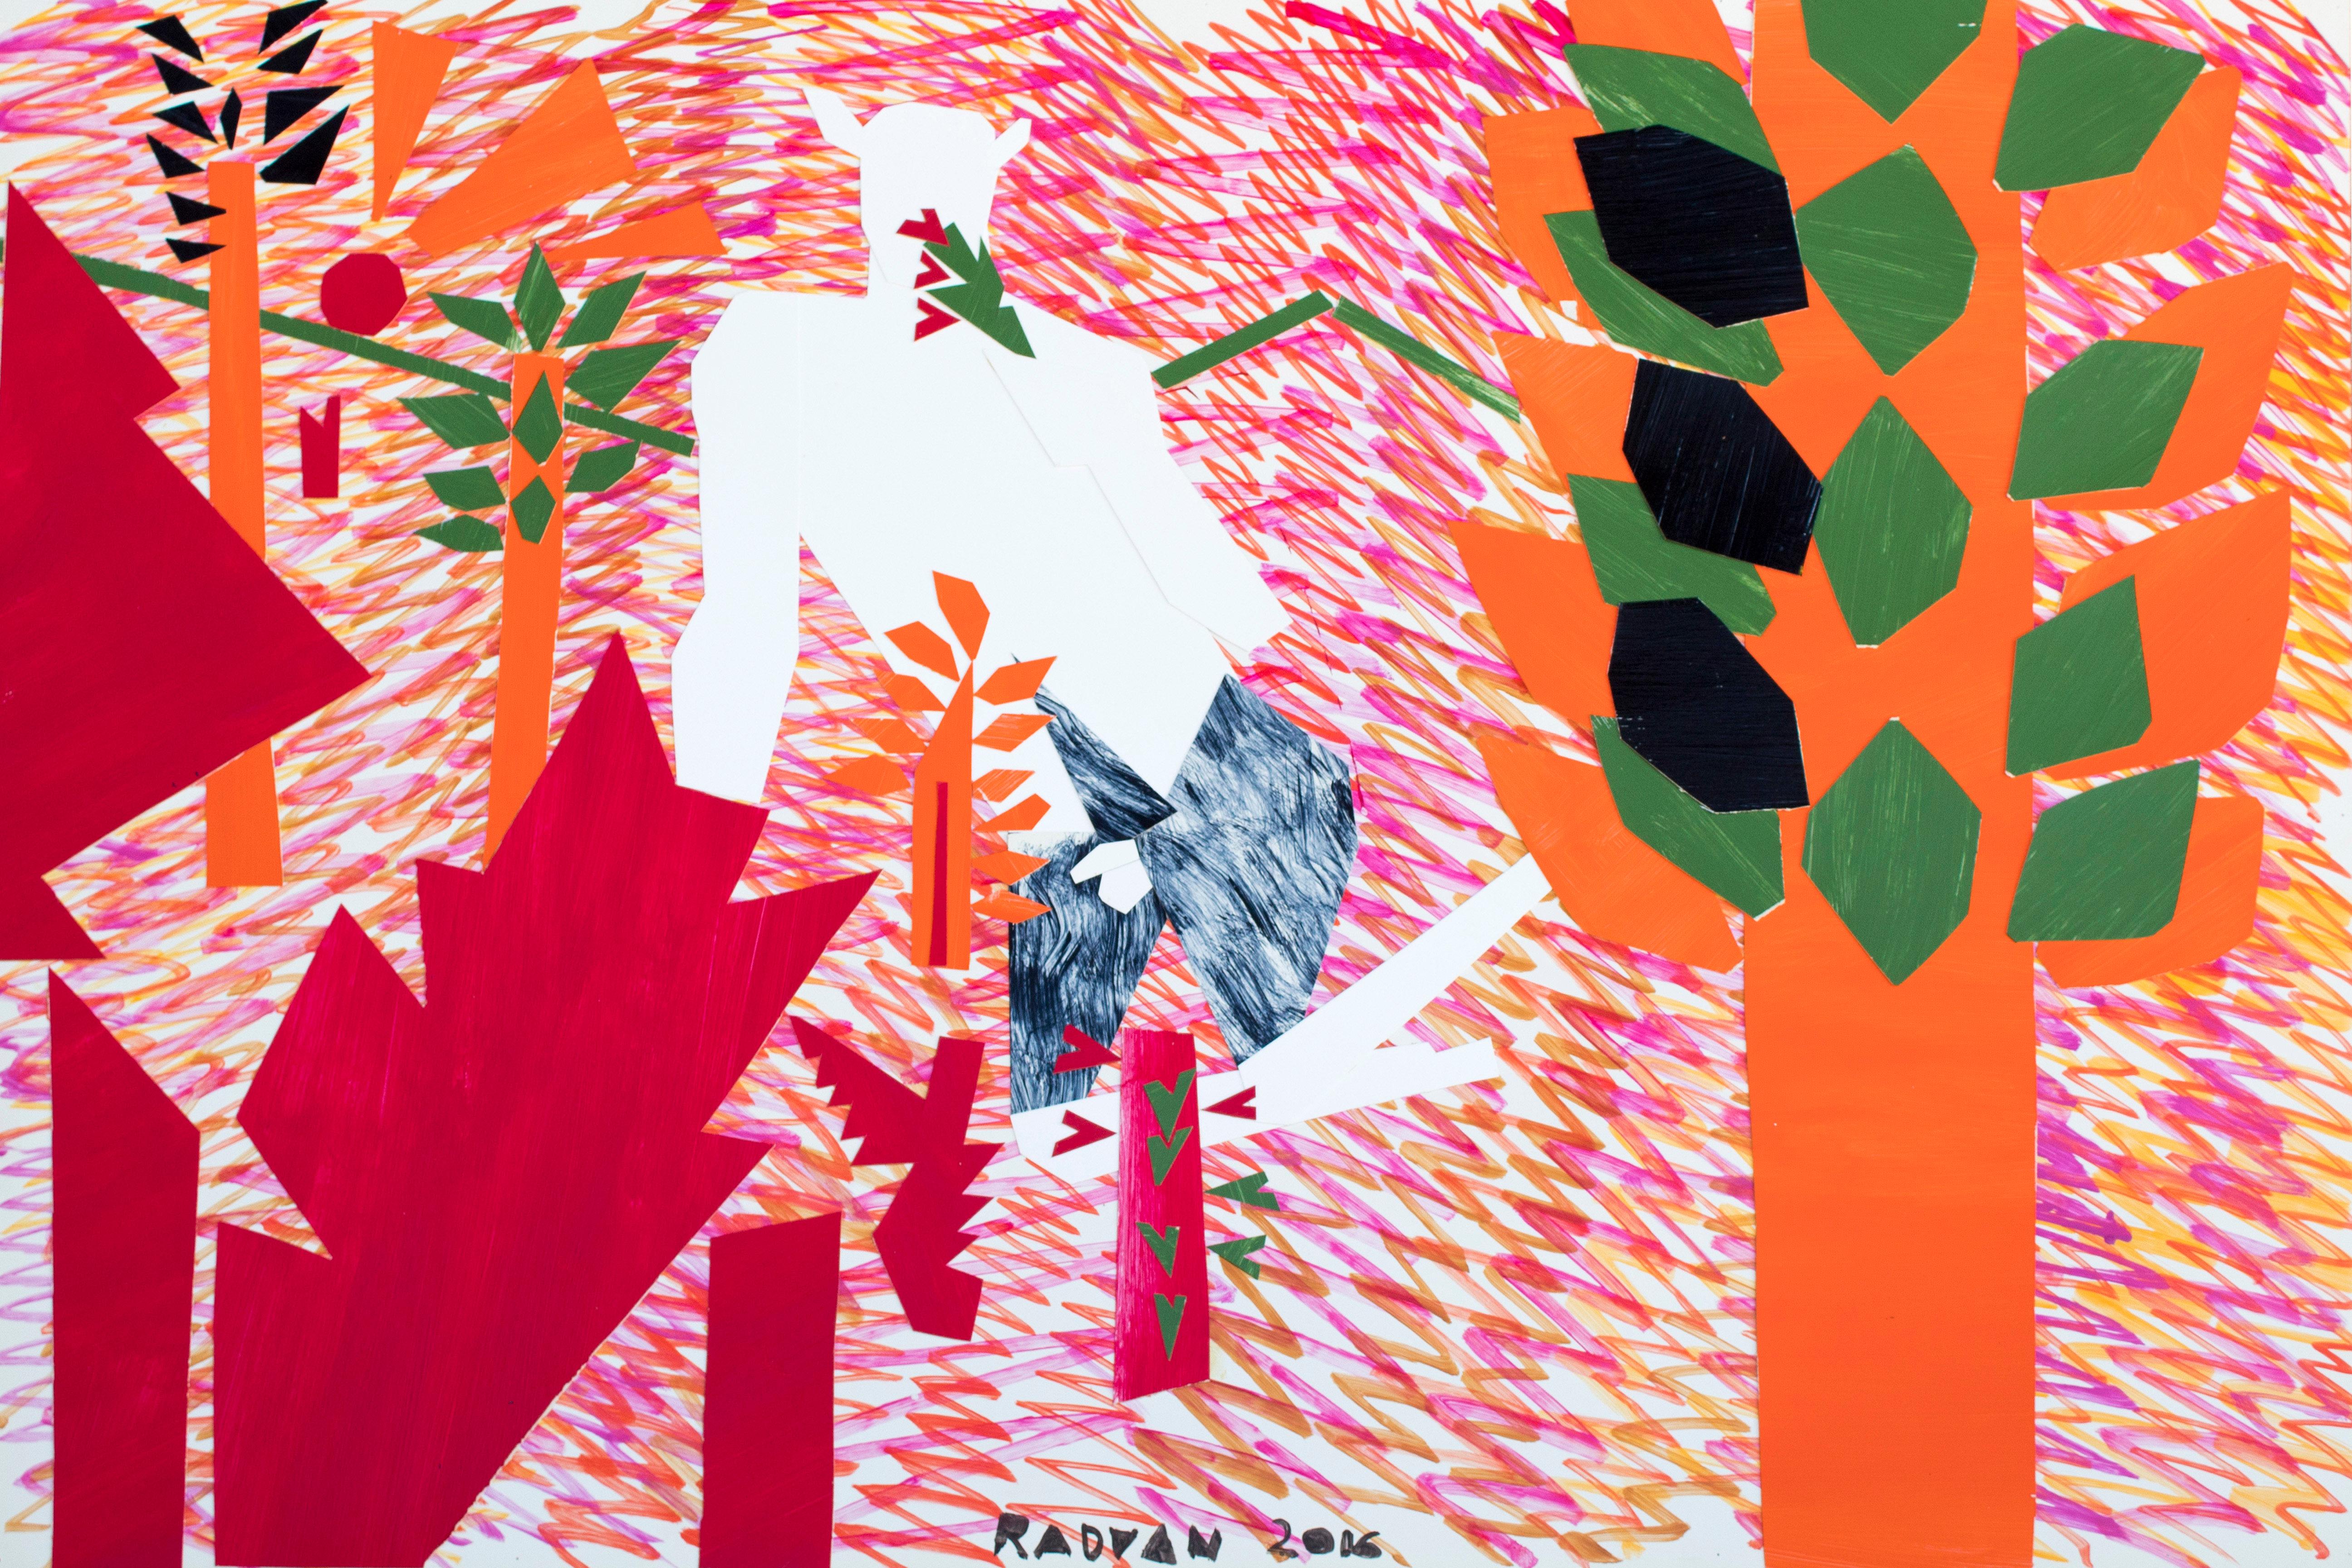 Le dernier jardin - Art contemporain, art figuratif, rouge, orange, nu, masculin